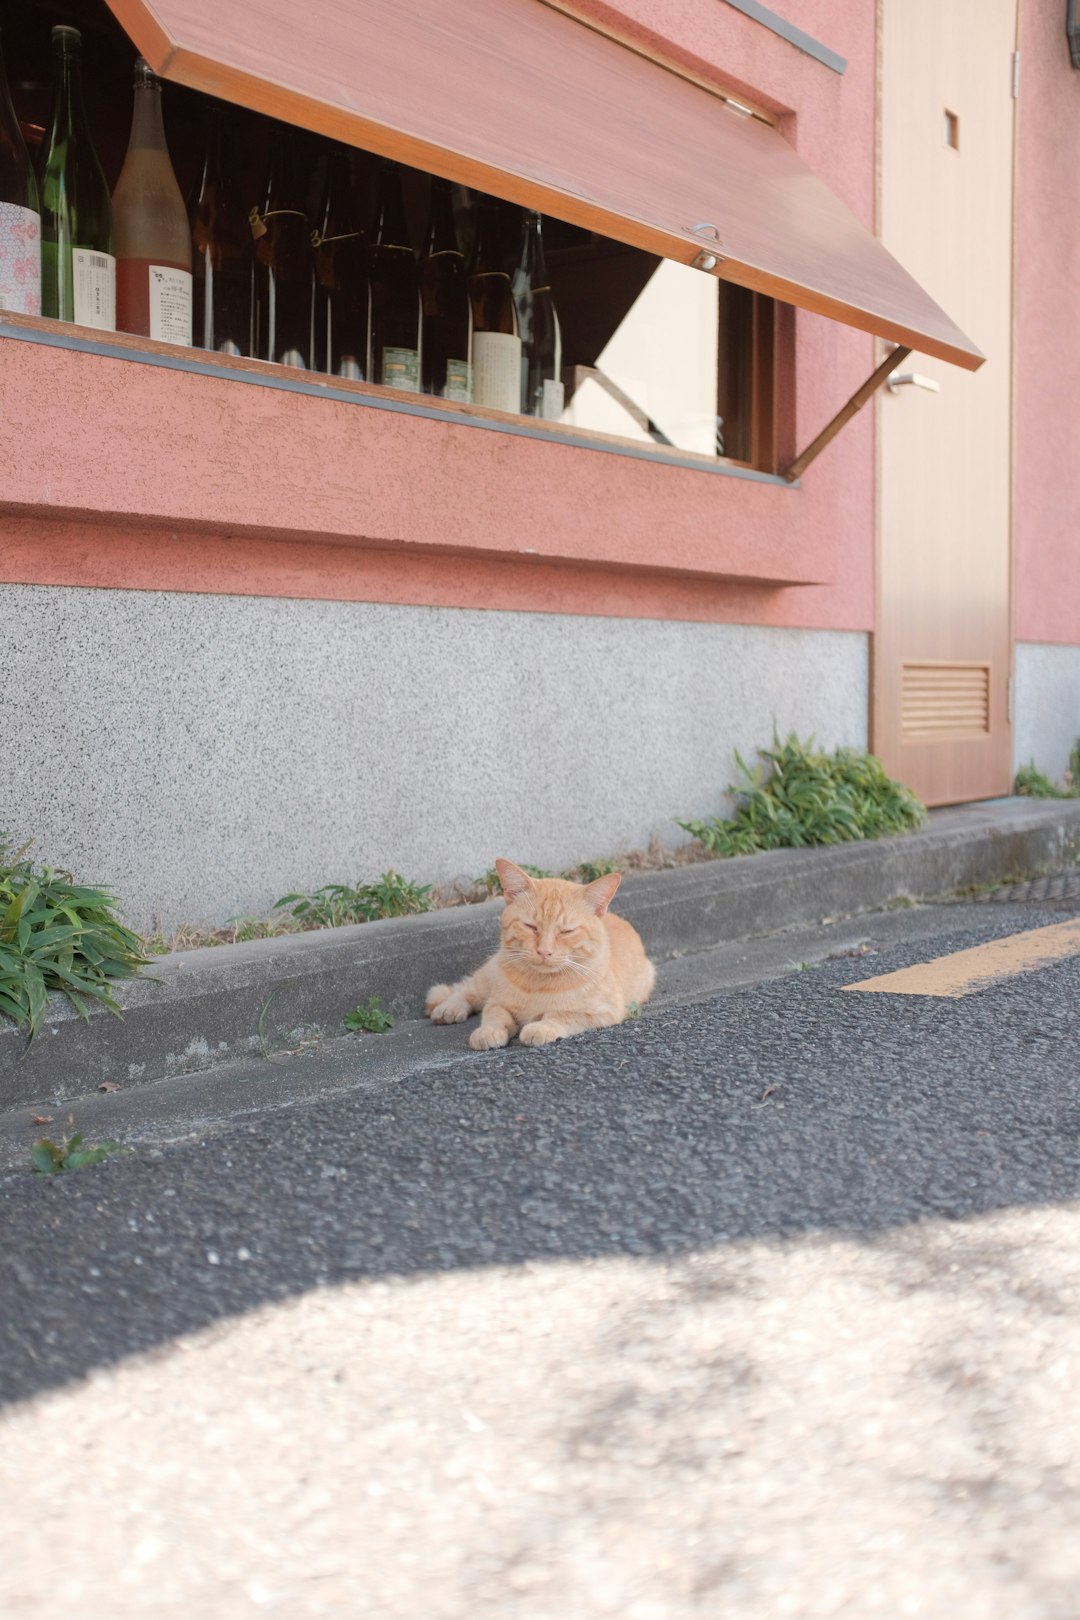 orange tabby cat on gray concrete floor